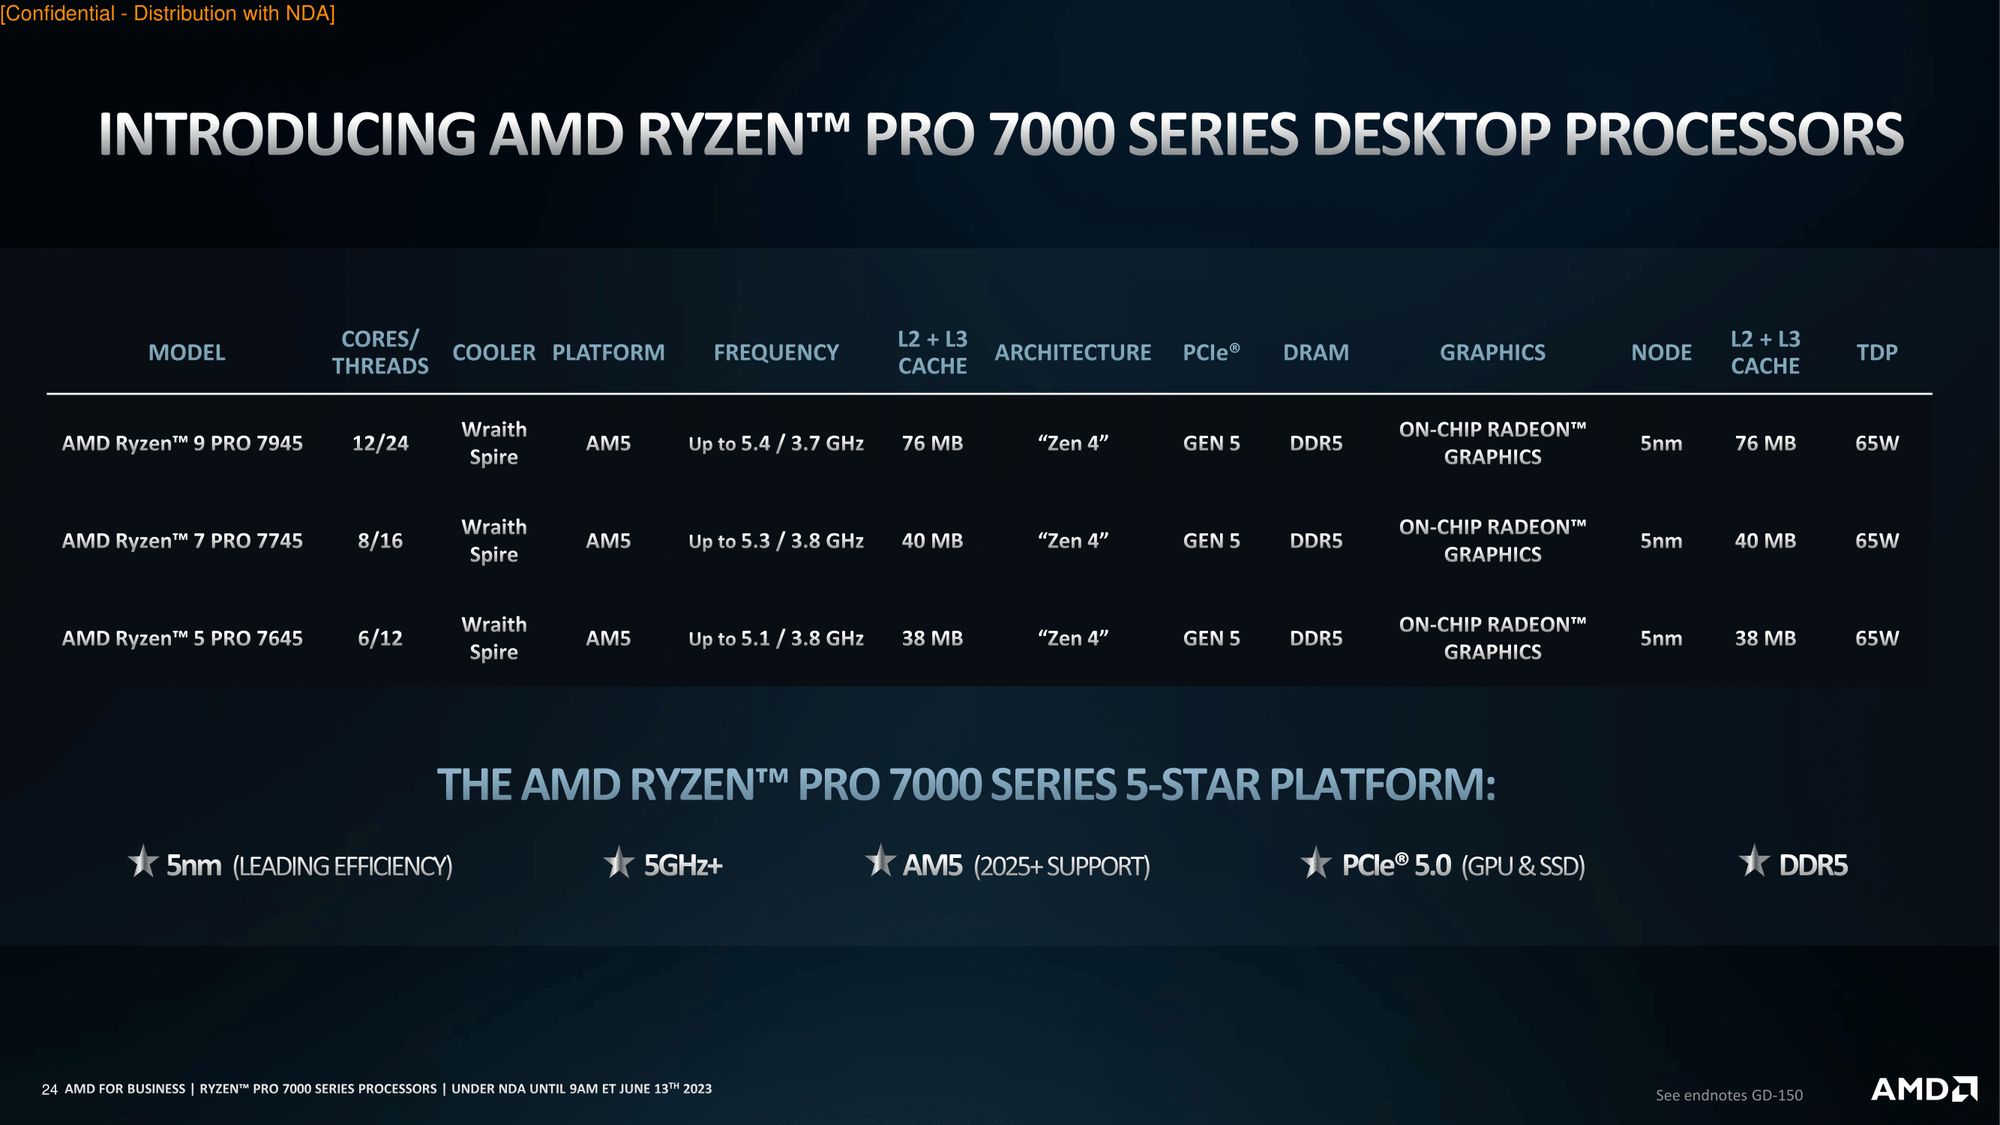 AMD Ryzen Pro 7000